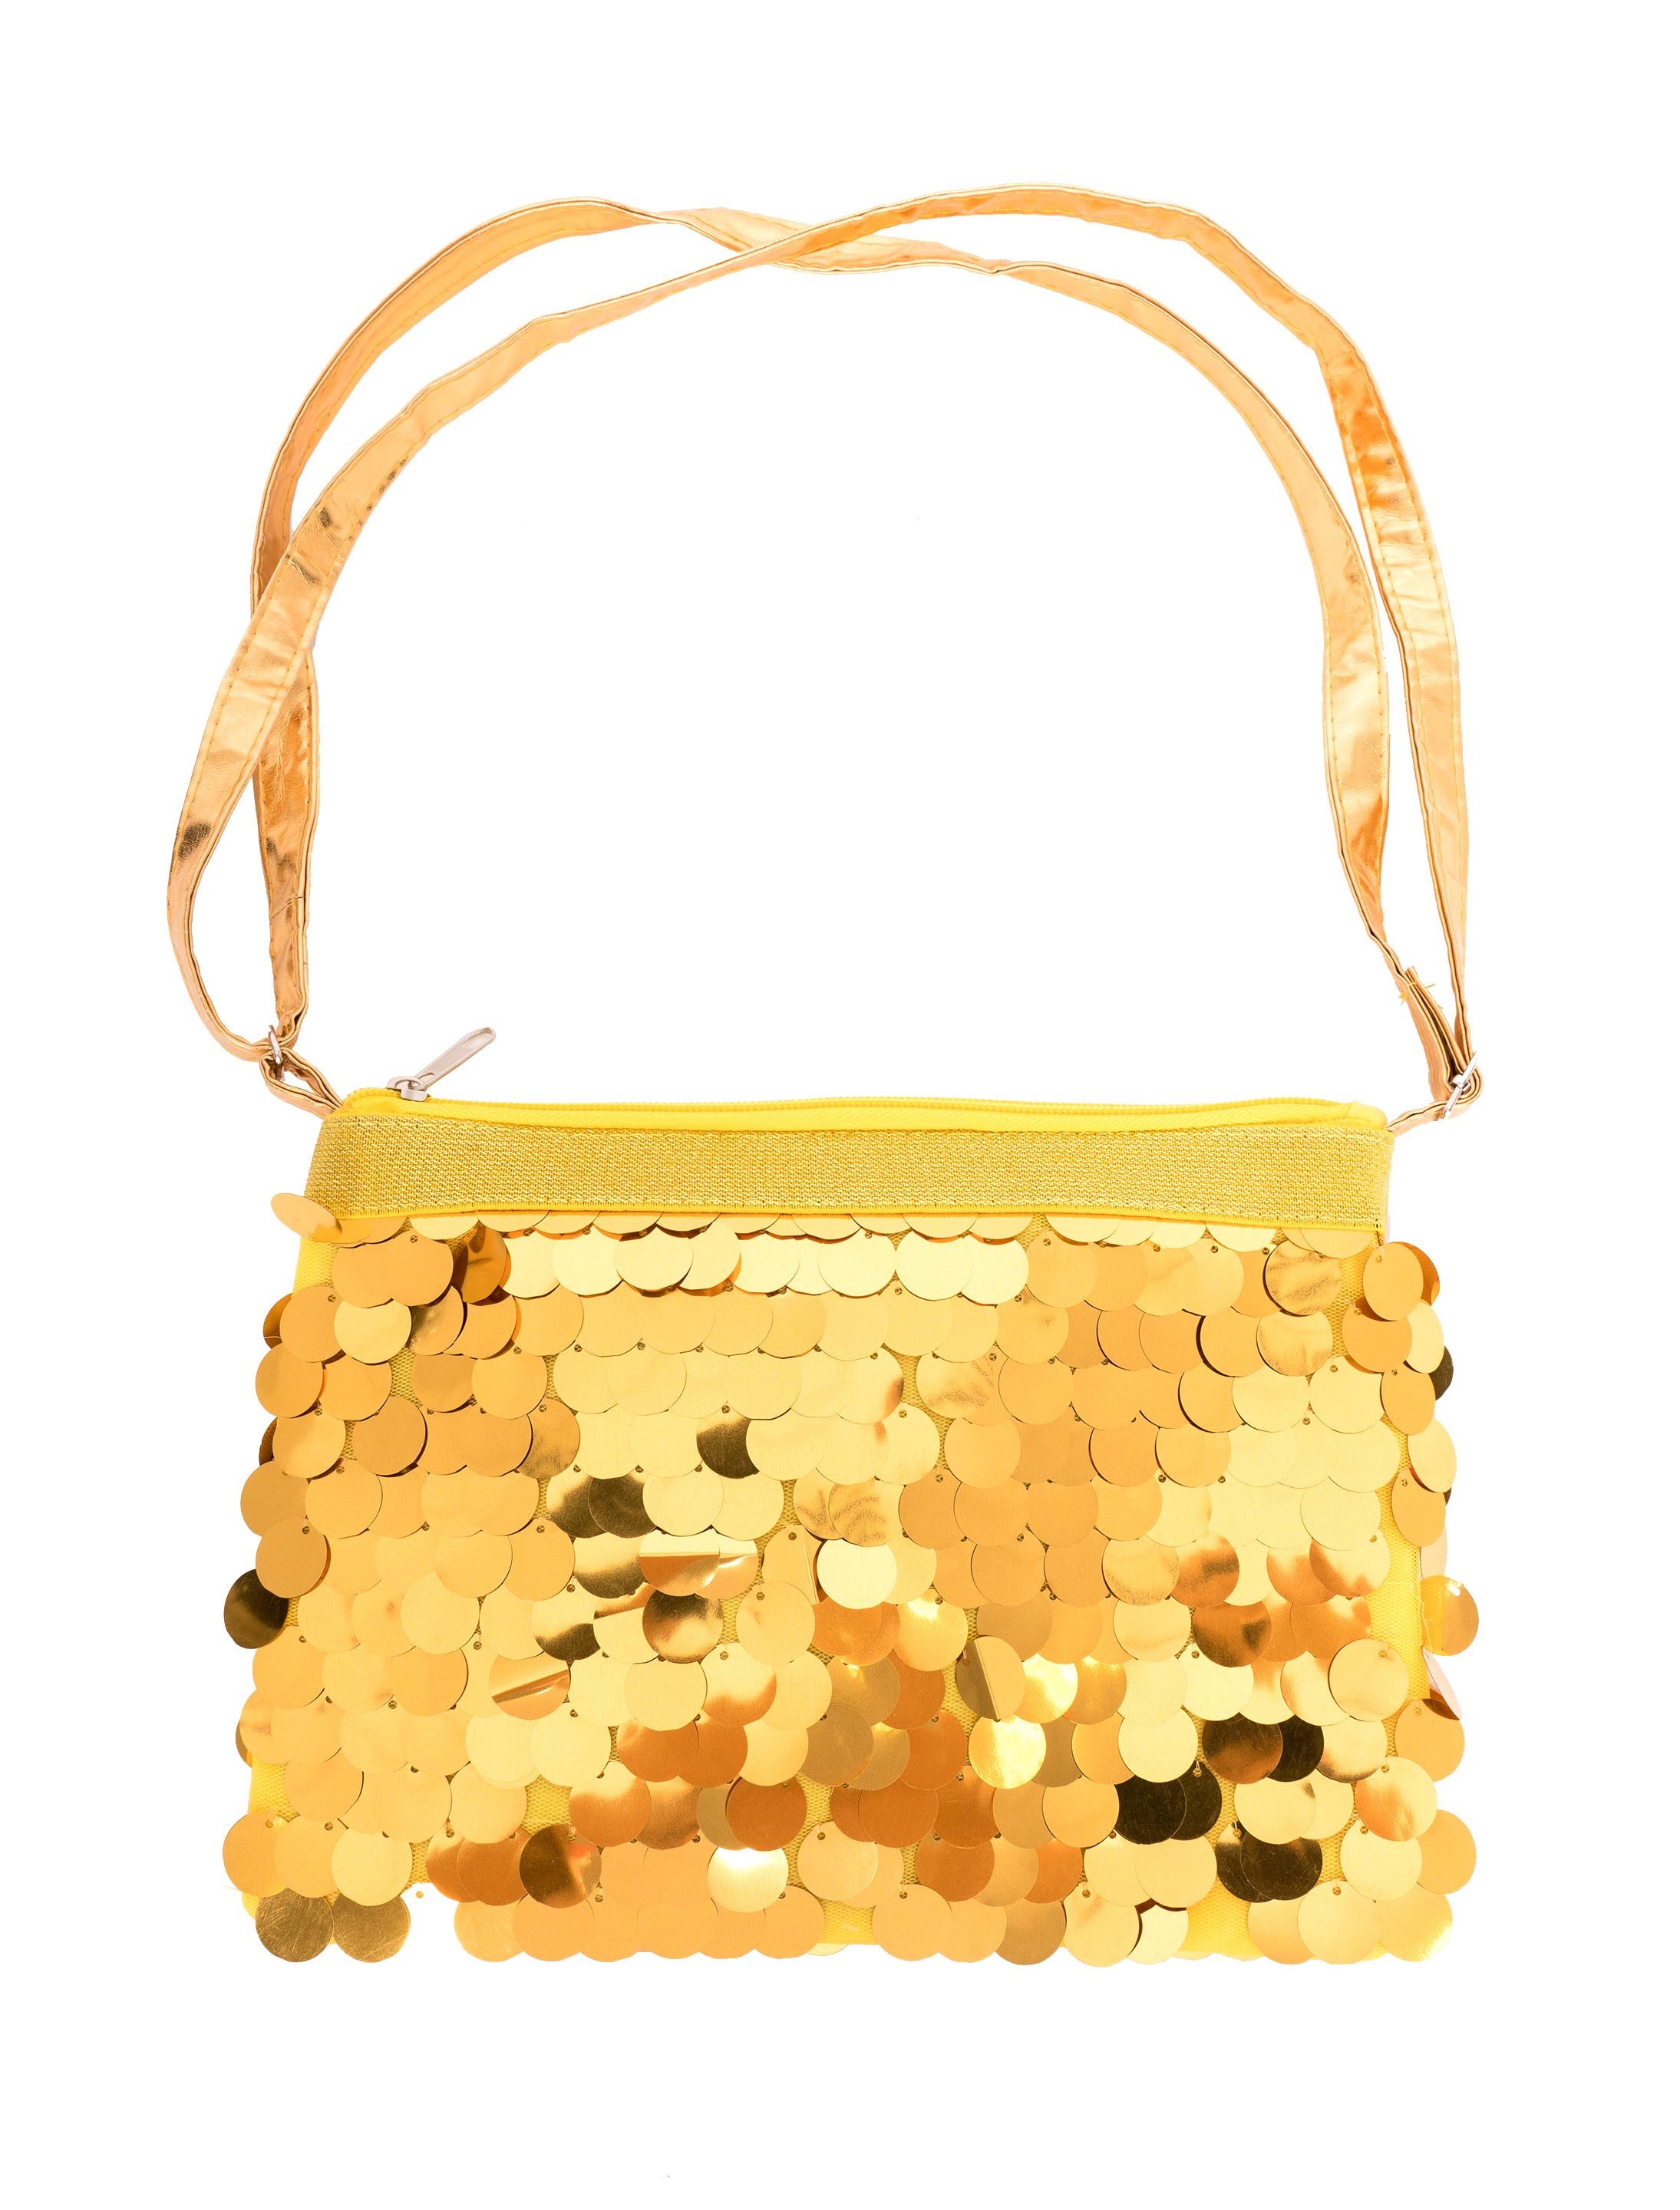 Tasche mit großen Pailletten gold